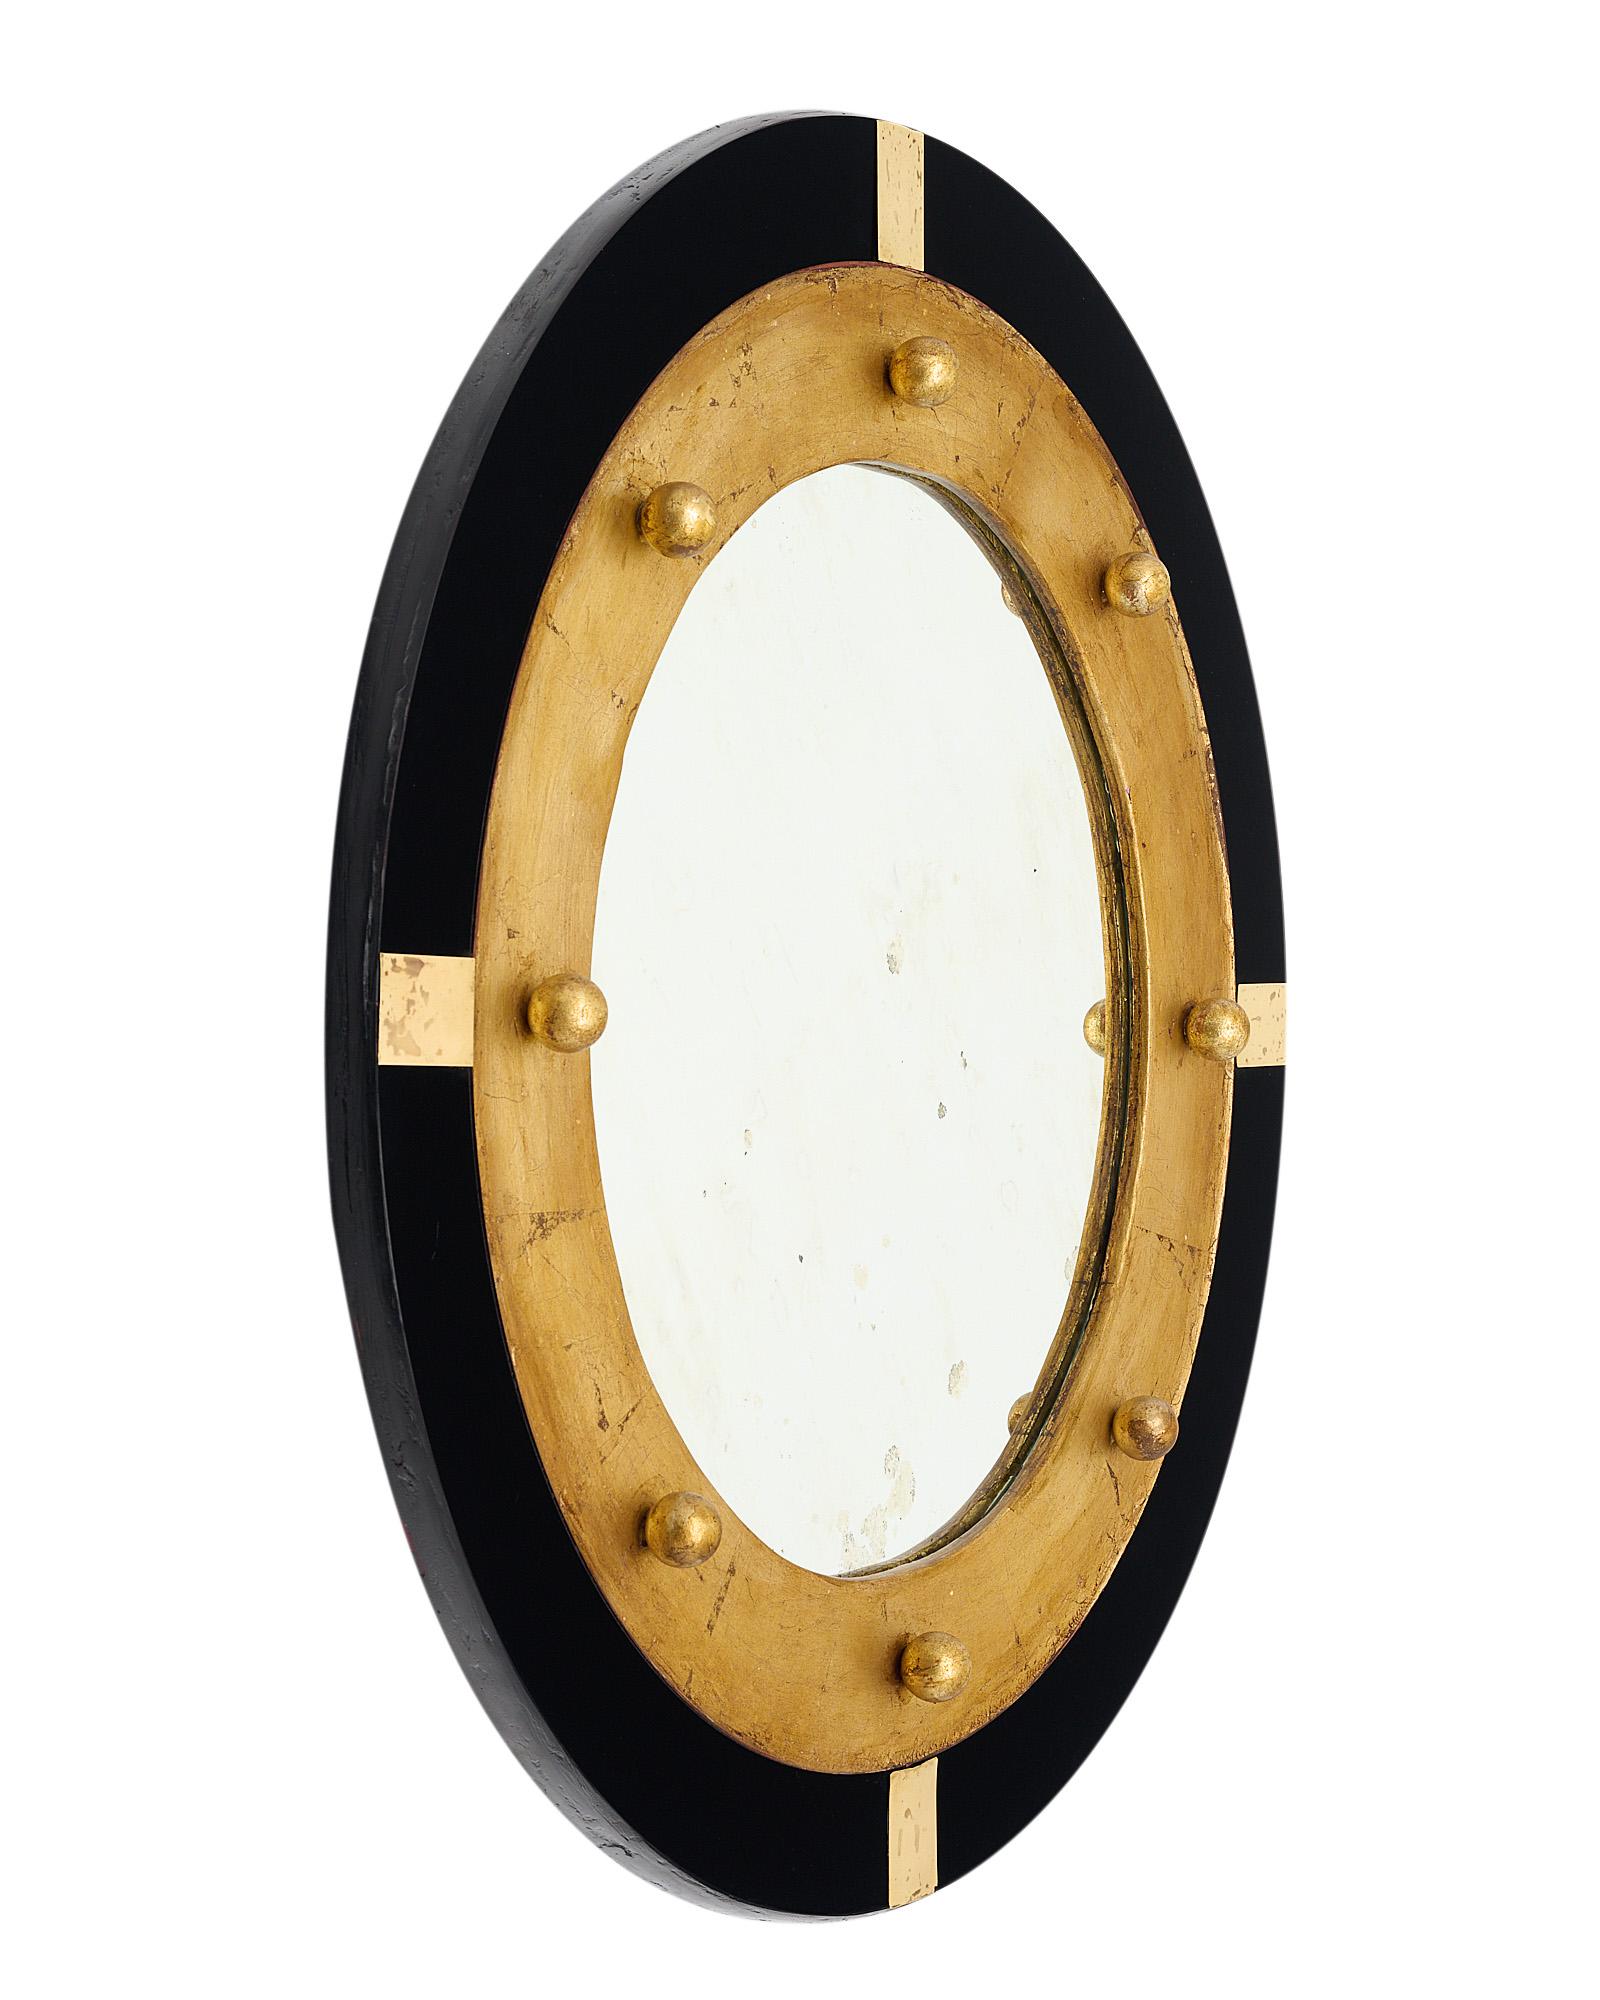 Spanischer Vintage-Spiegel mit rundem Zentralspiegel und Holzstruktur. Das Stück ist mit Blattgold beschichtet und hat eine schöne Patina. Sie ist mit schwarzem Glas umrahmt und mit kleinen kugelförmigen goldenen Endstücken und Messingelementen